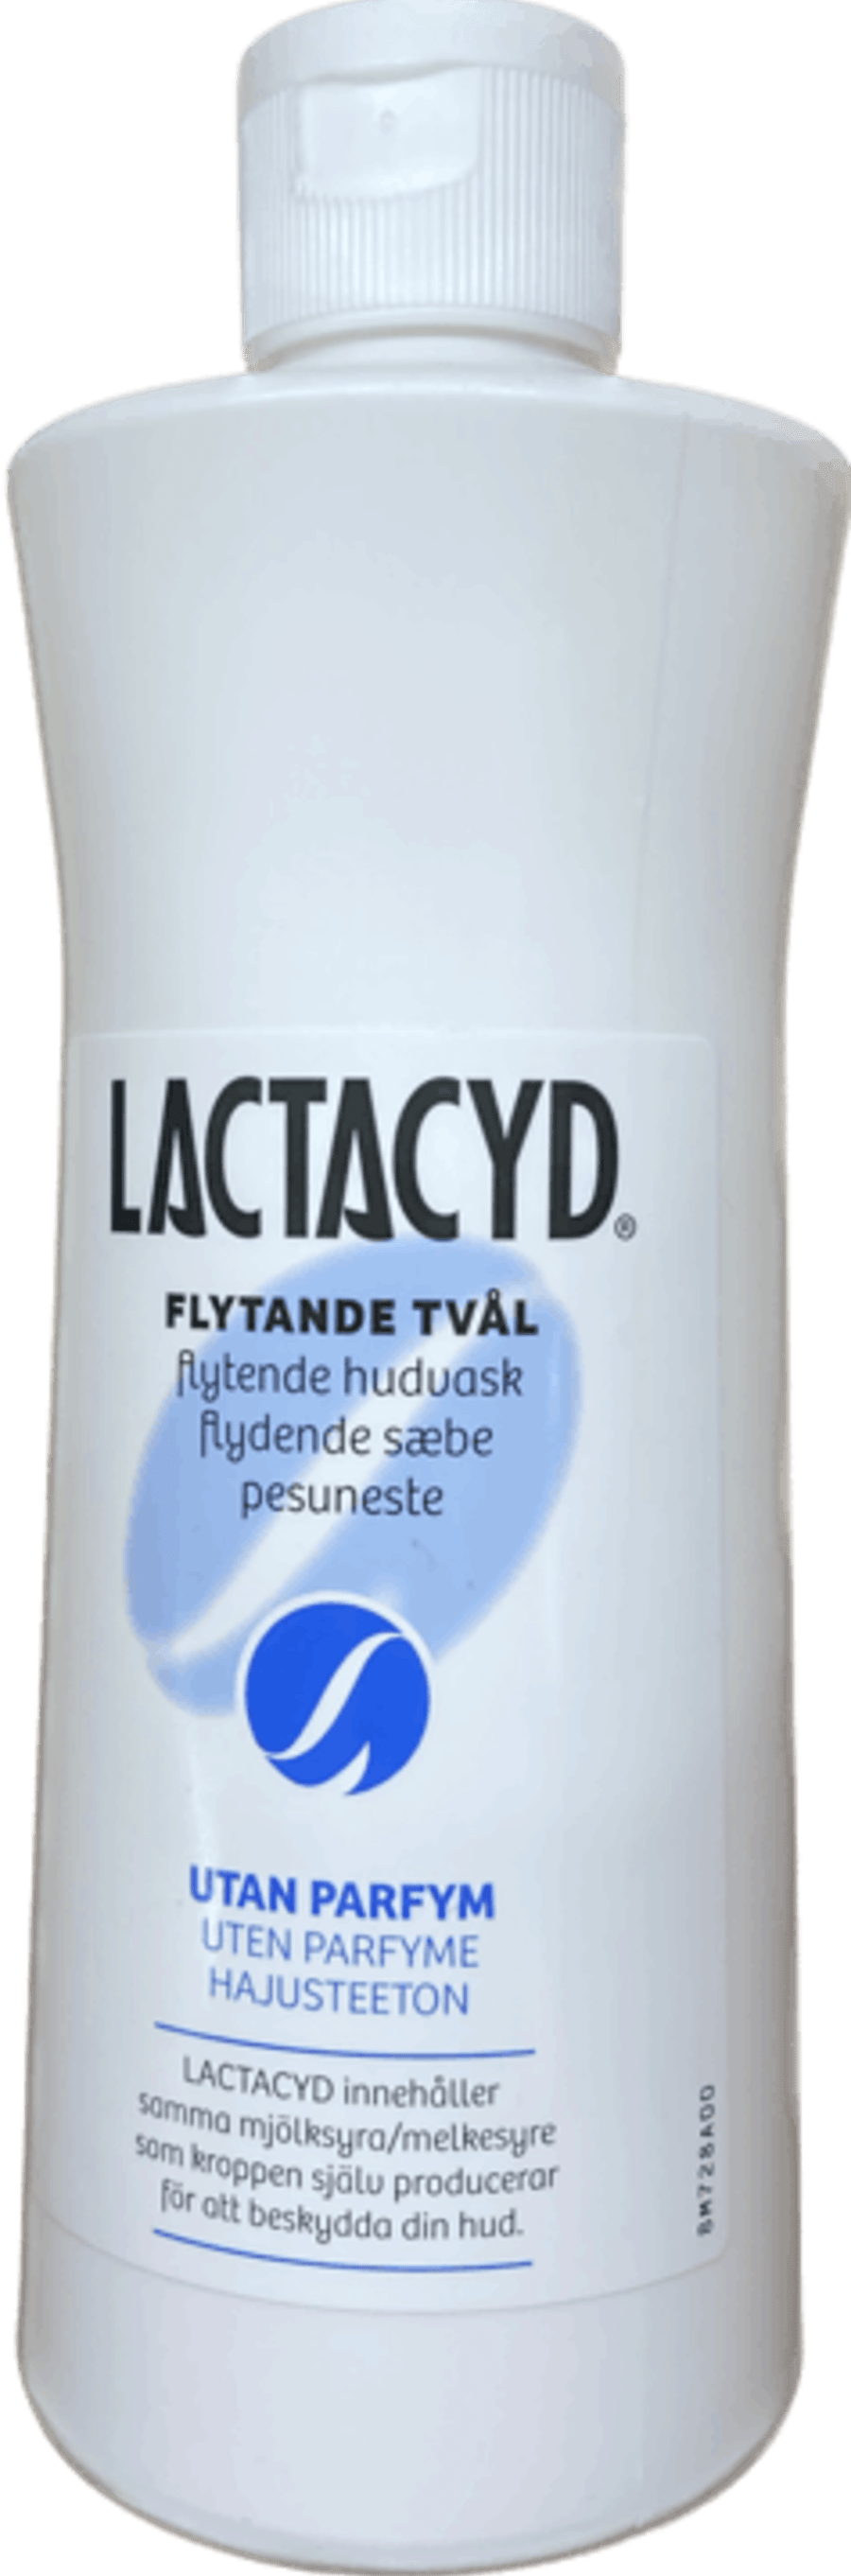 Lactacyd sápa 500 ml